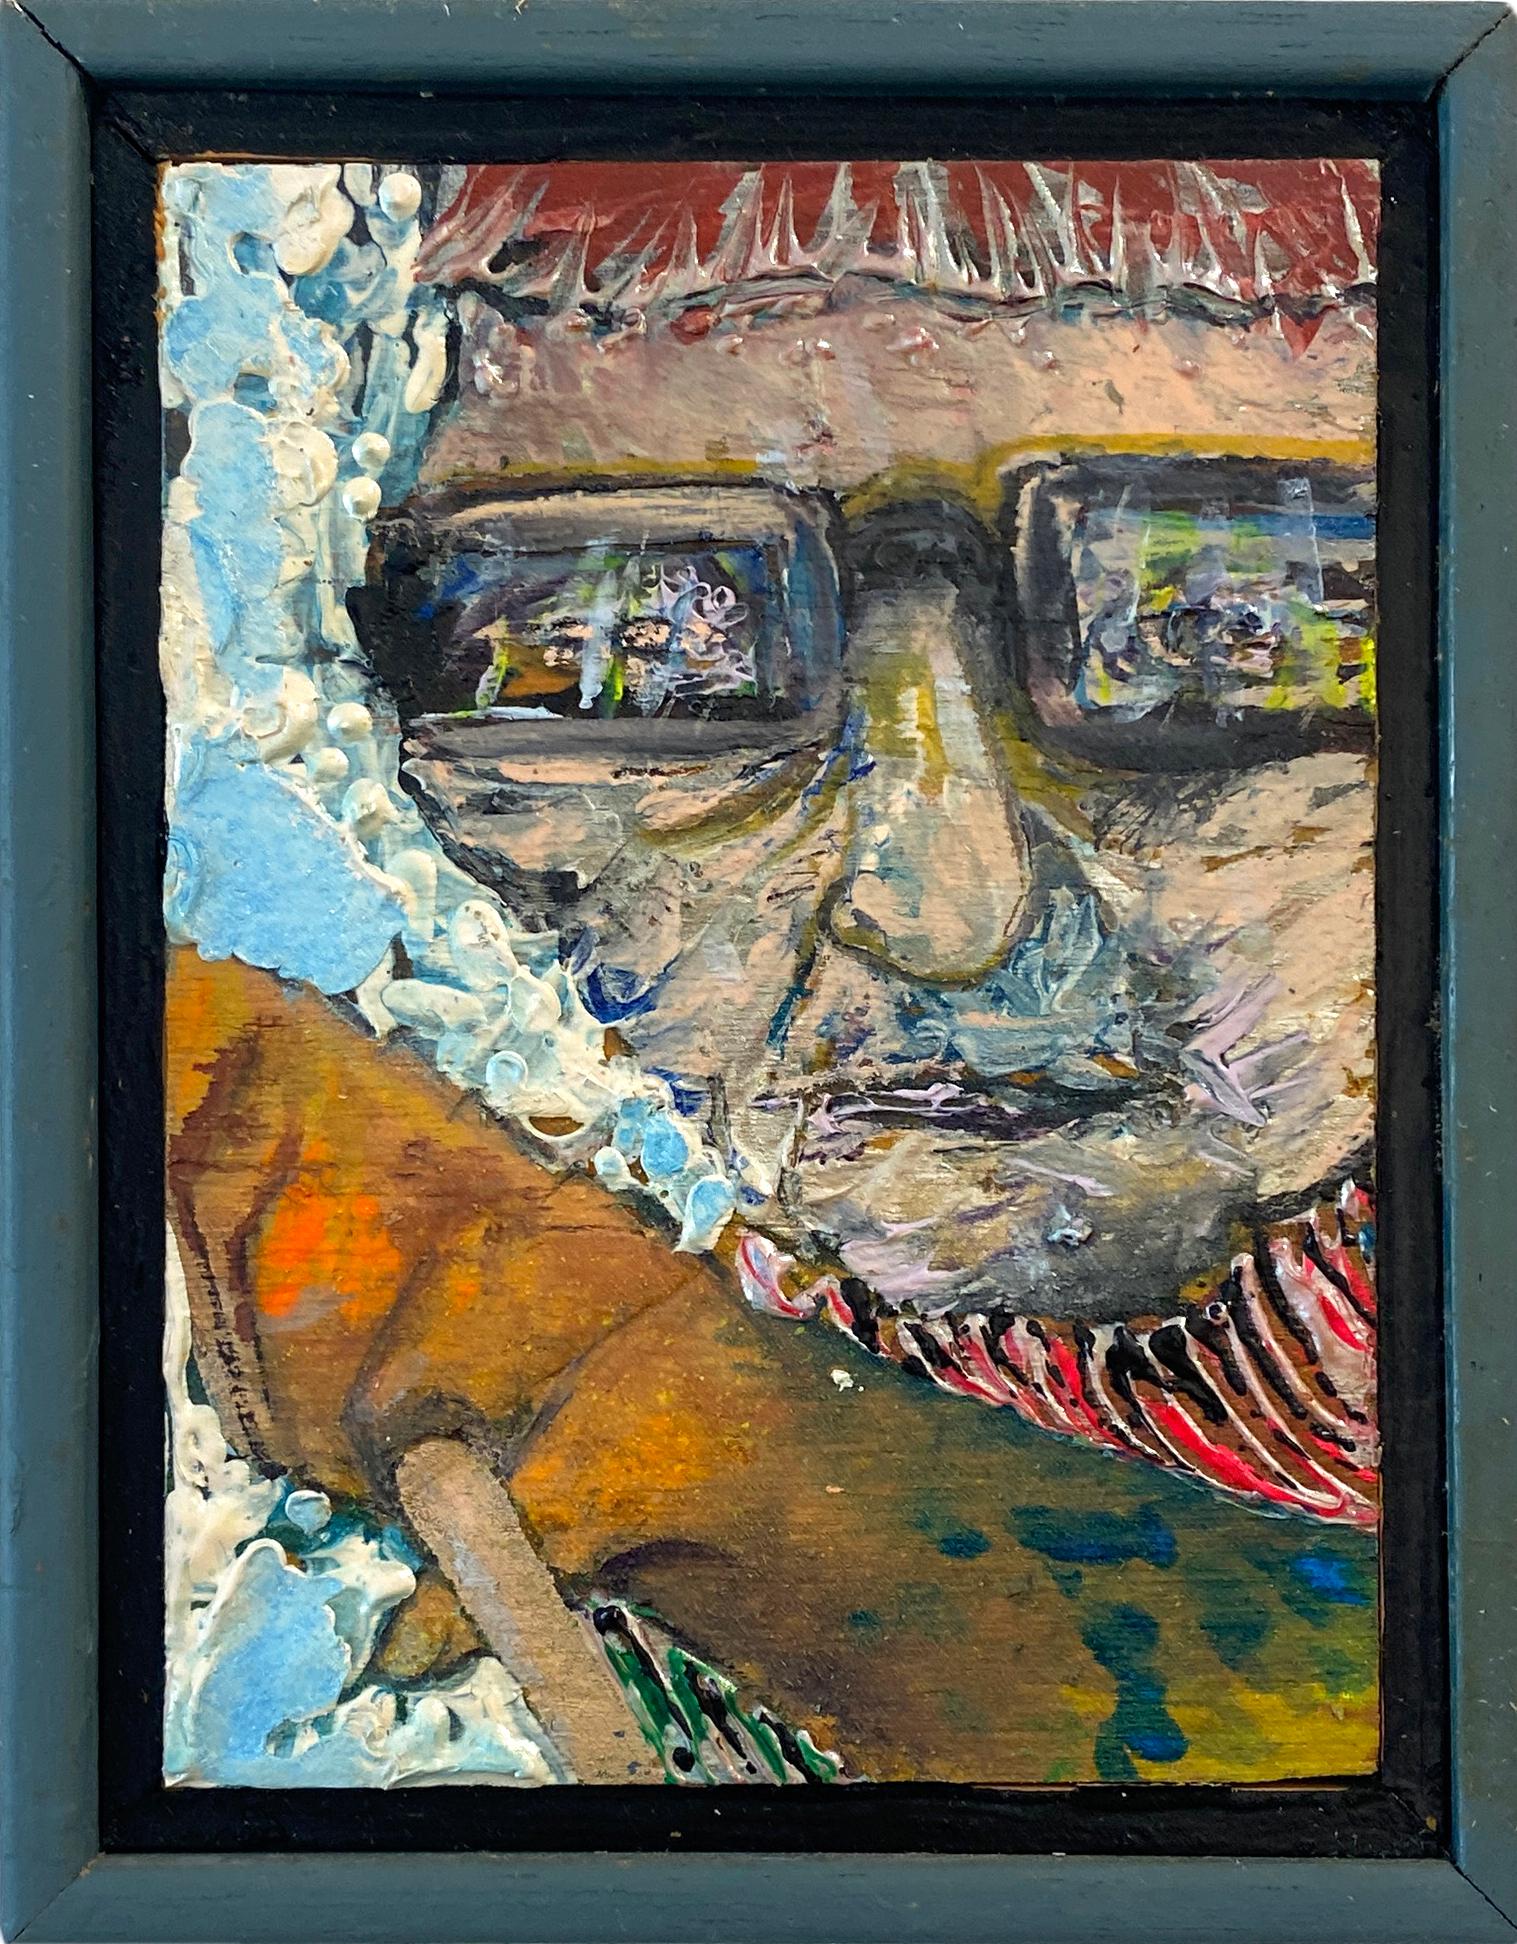 Disponible chez Madelyn Jordon Fine Art. Marblemanblossom" de Stanley Boxer, 1991. Huile et techniques mixtes sur toile, 6,25 x 4,75 po. / Cadre : 7 x 5.5 x 2 in.  Cette peinture représente le visage d'un homme portant des lunettes, le bras tendu.